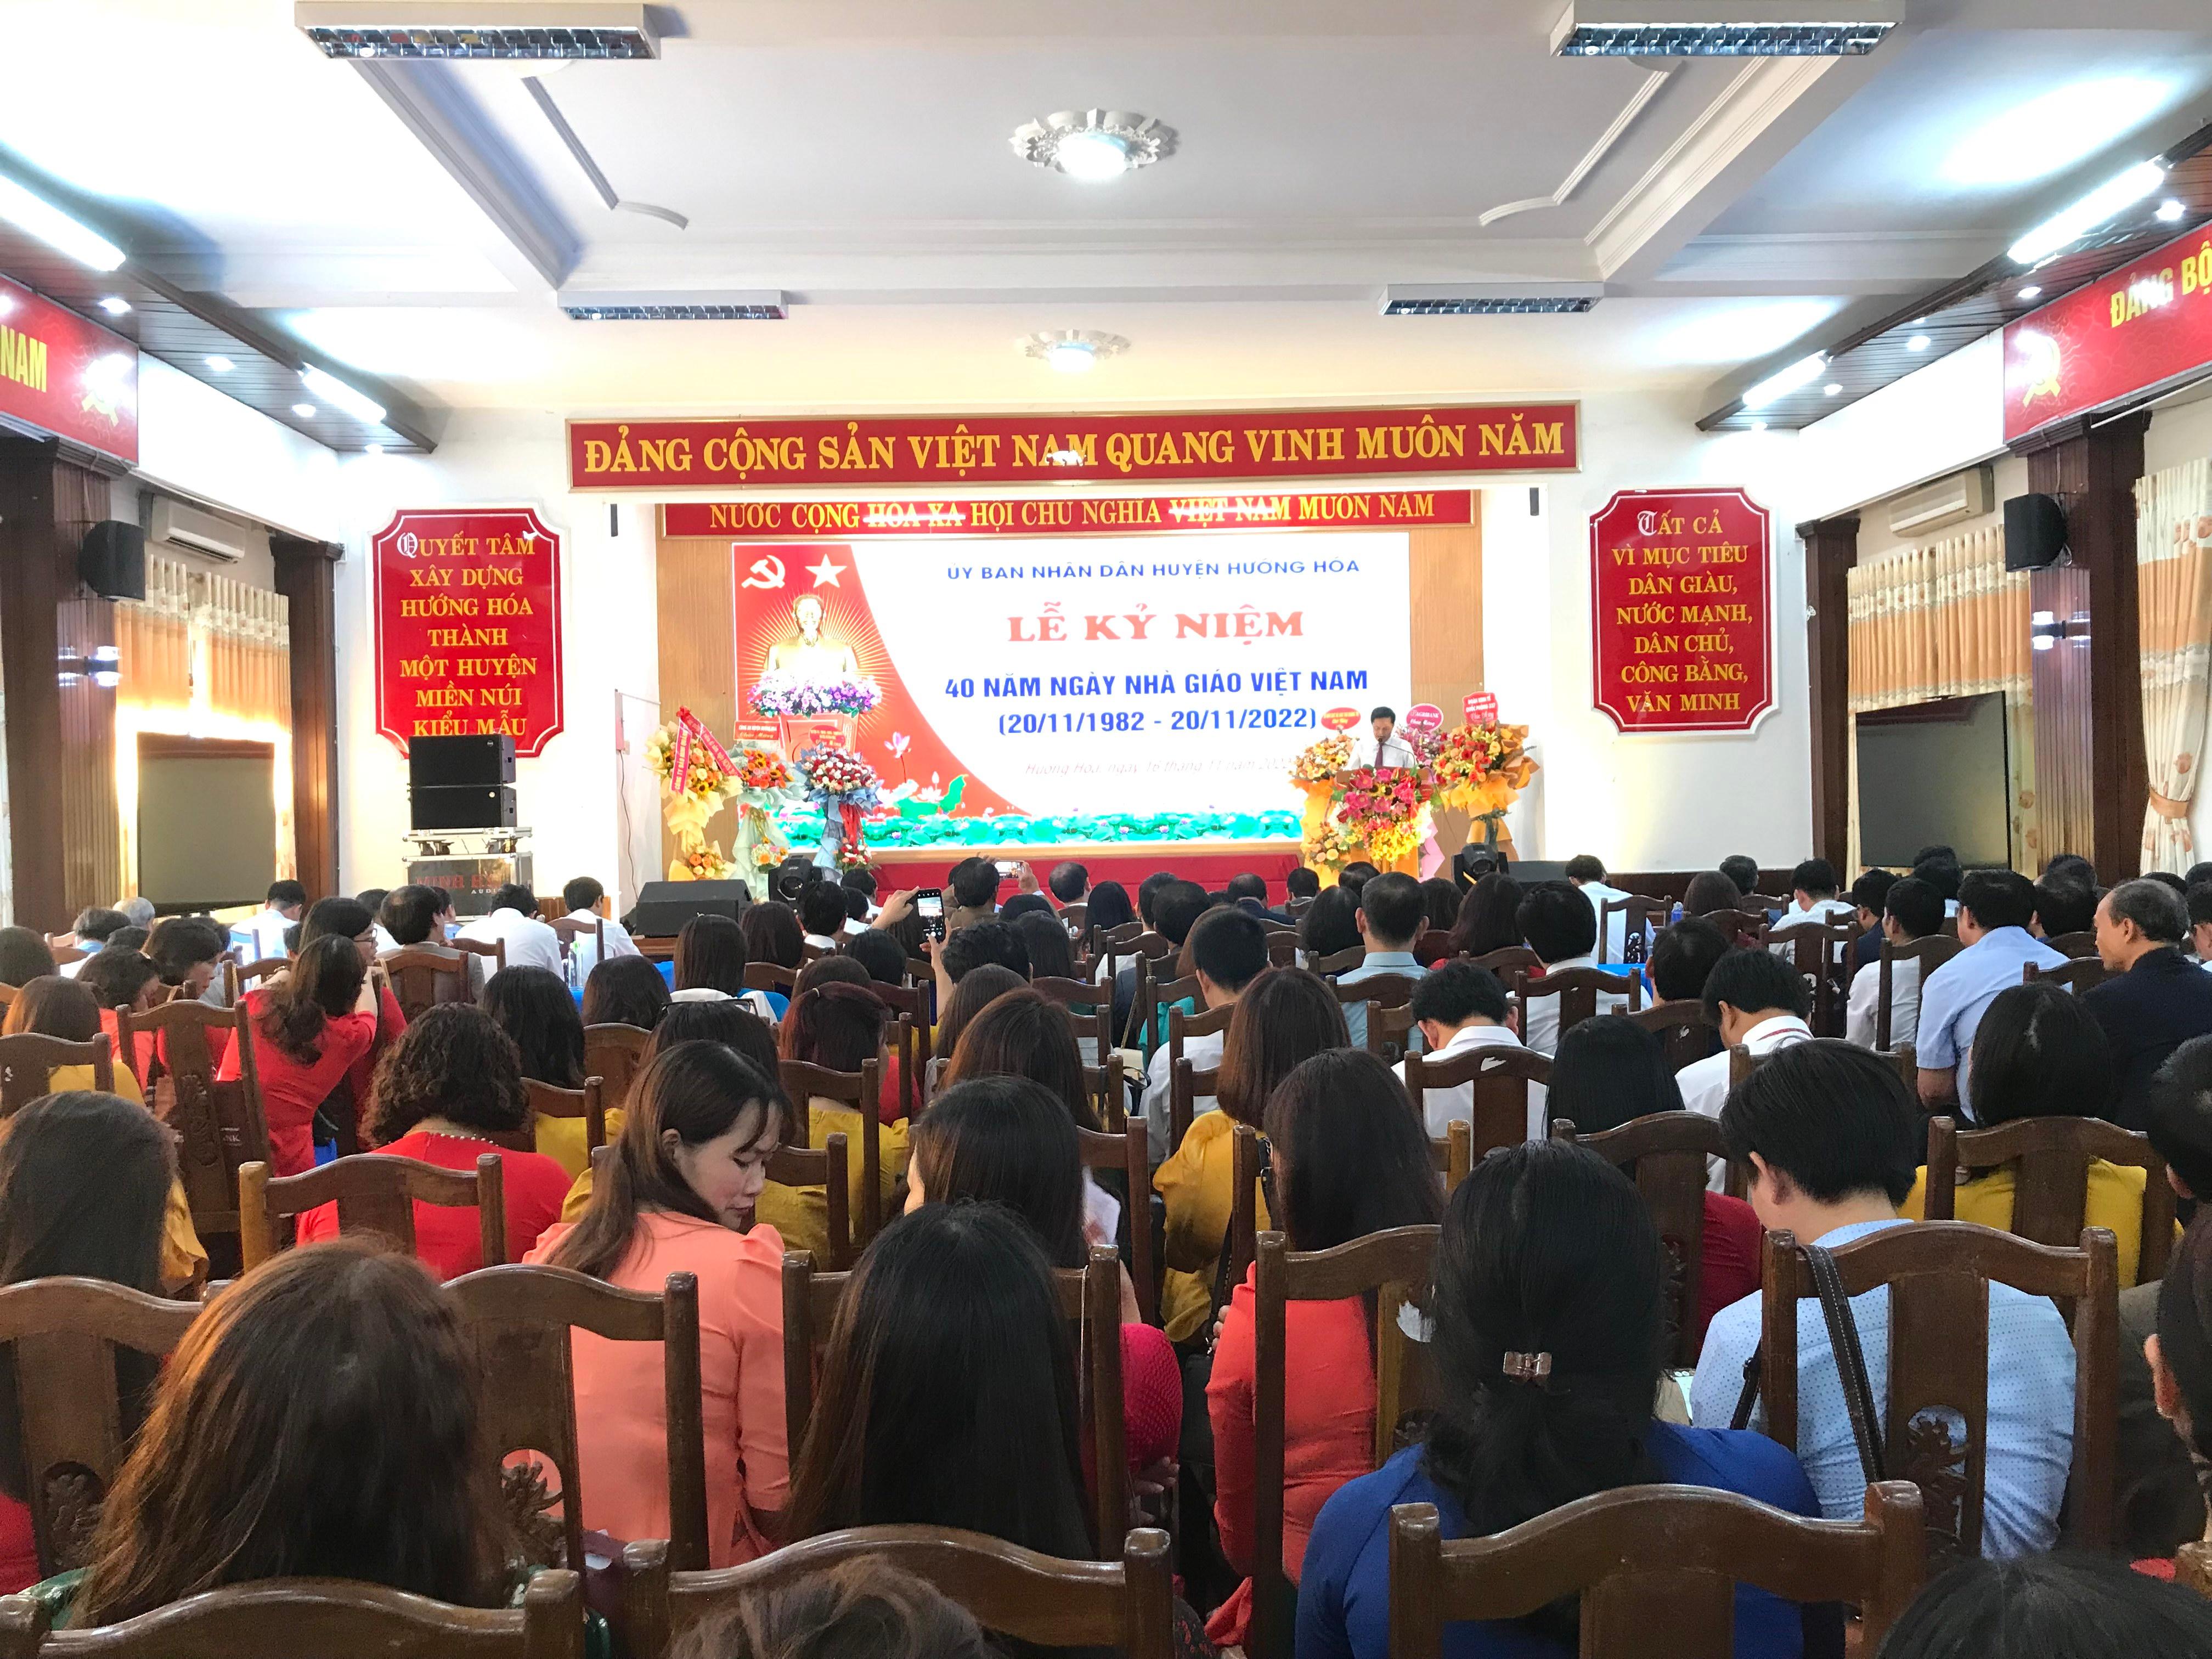 Hướng Hóa tổ chức Lễ kỷ niệm 40 năm ngày Nhà giáo Việt Nam 20/11(1982-2022)